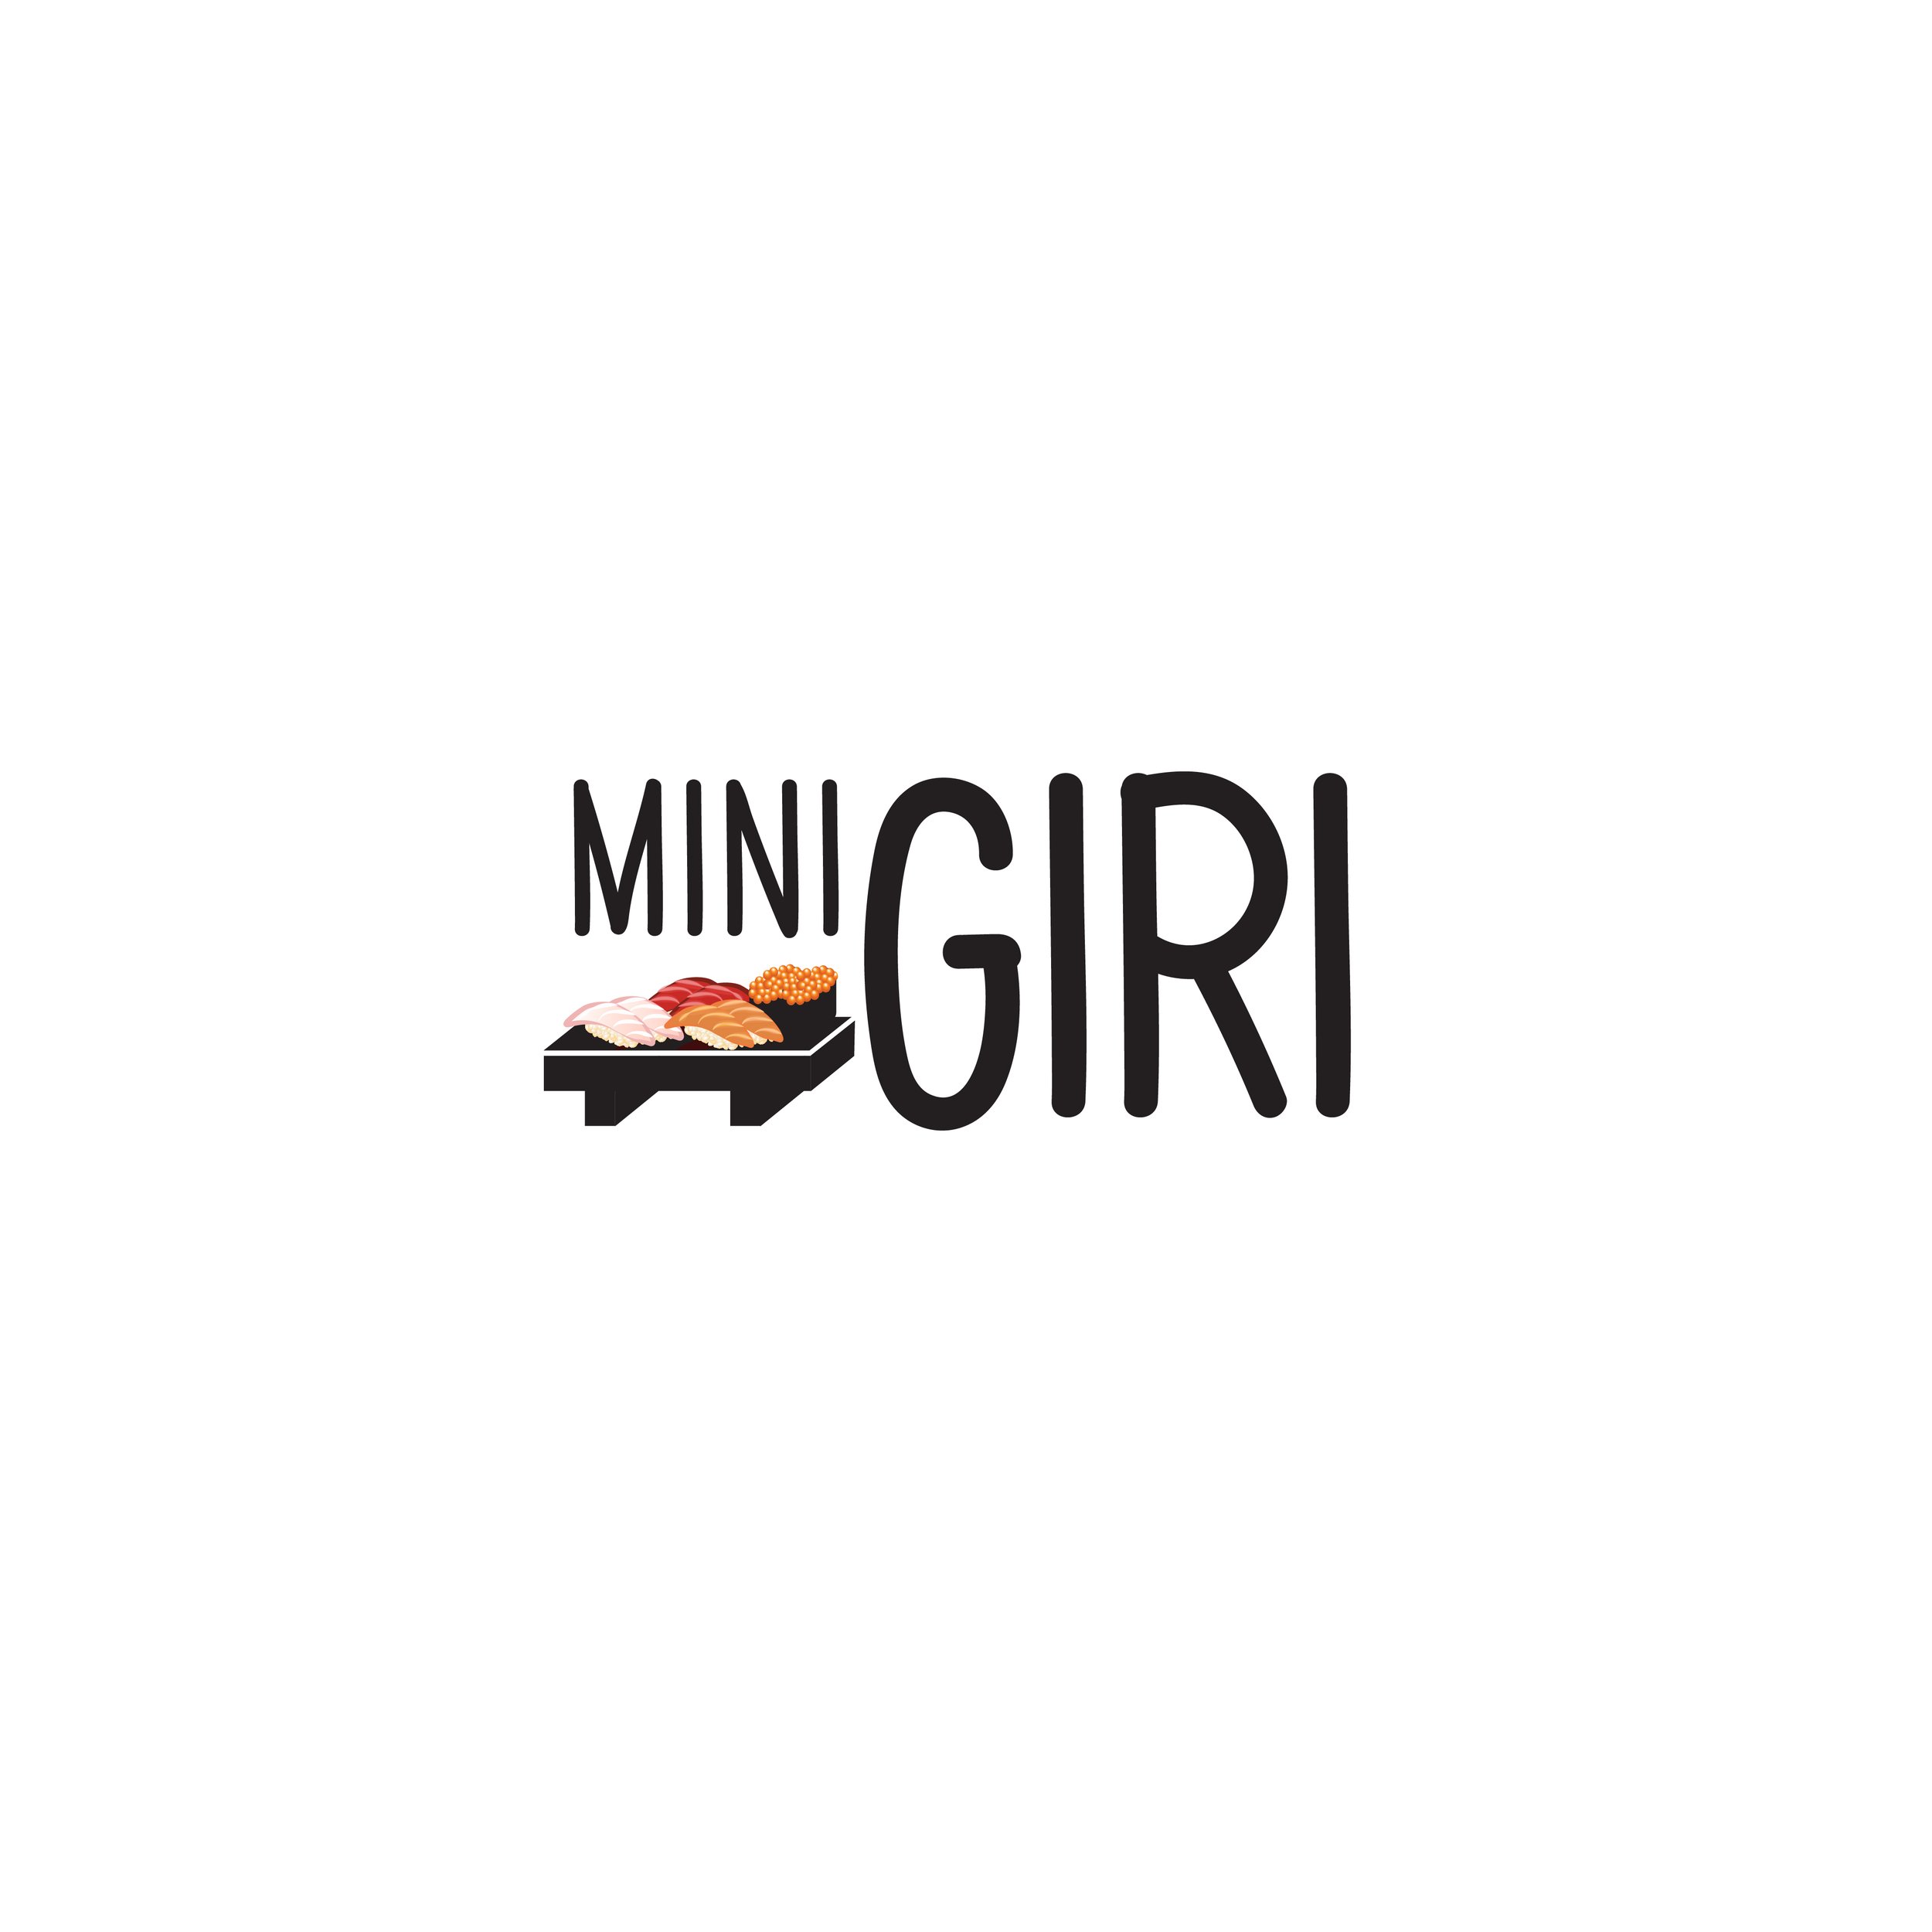 Minigiri-01.jpg